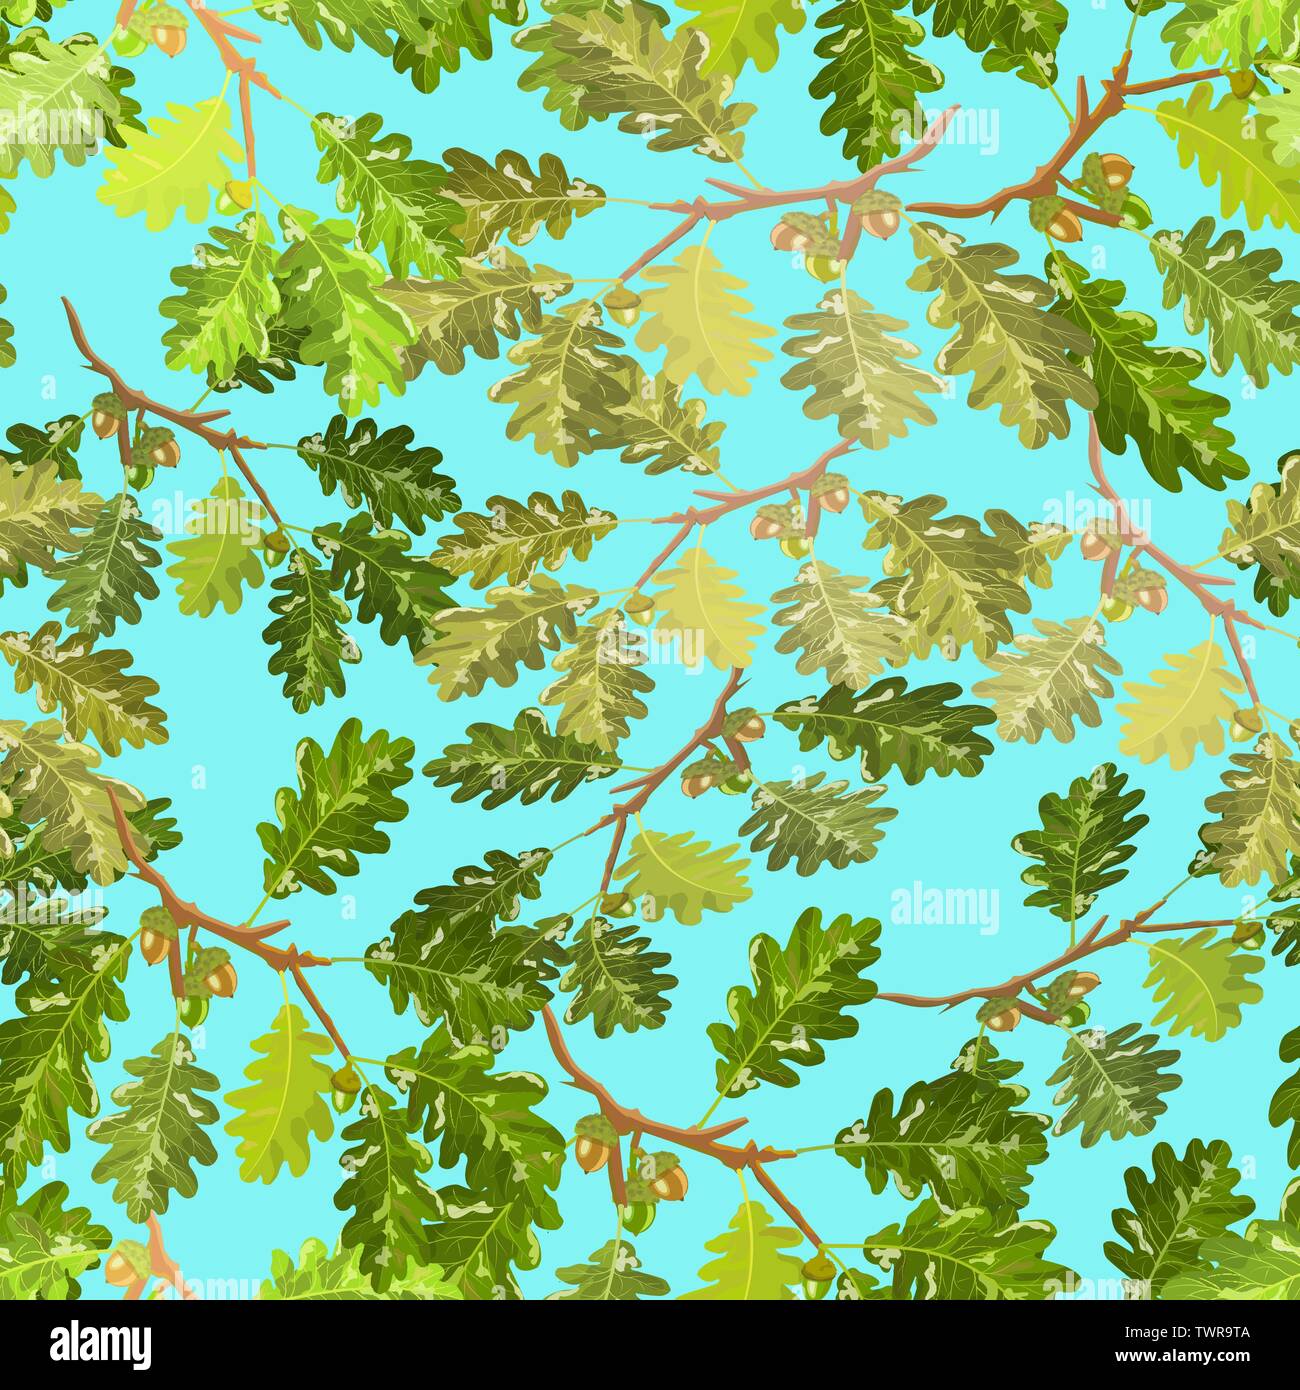 Branches de chêne avec des glands et des feuilles avec motif transparent light blue sky background Illustration de Vecteur